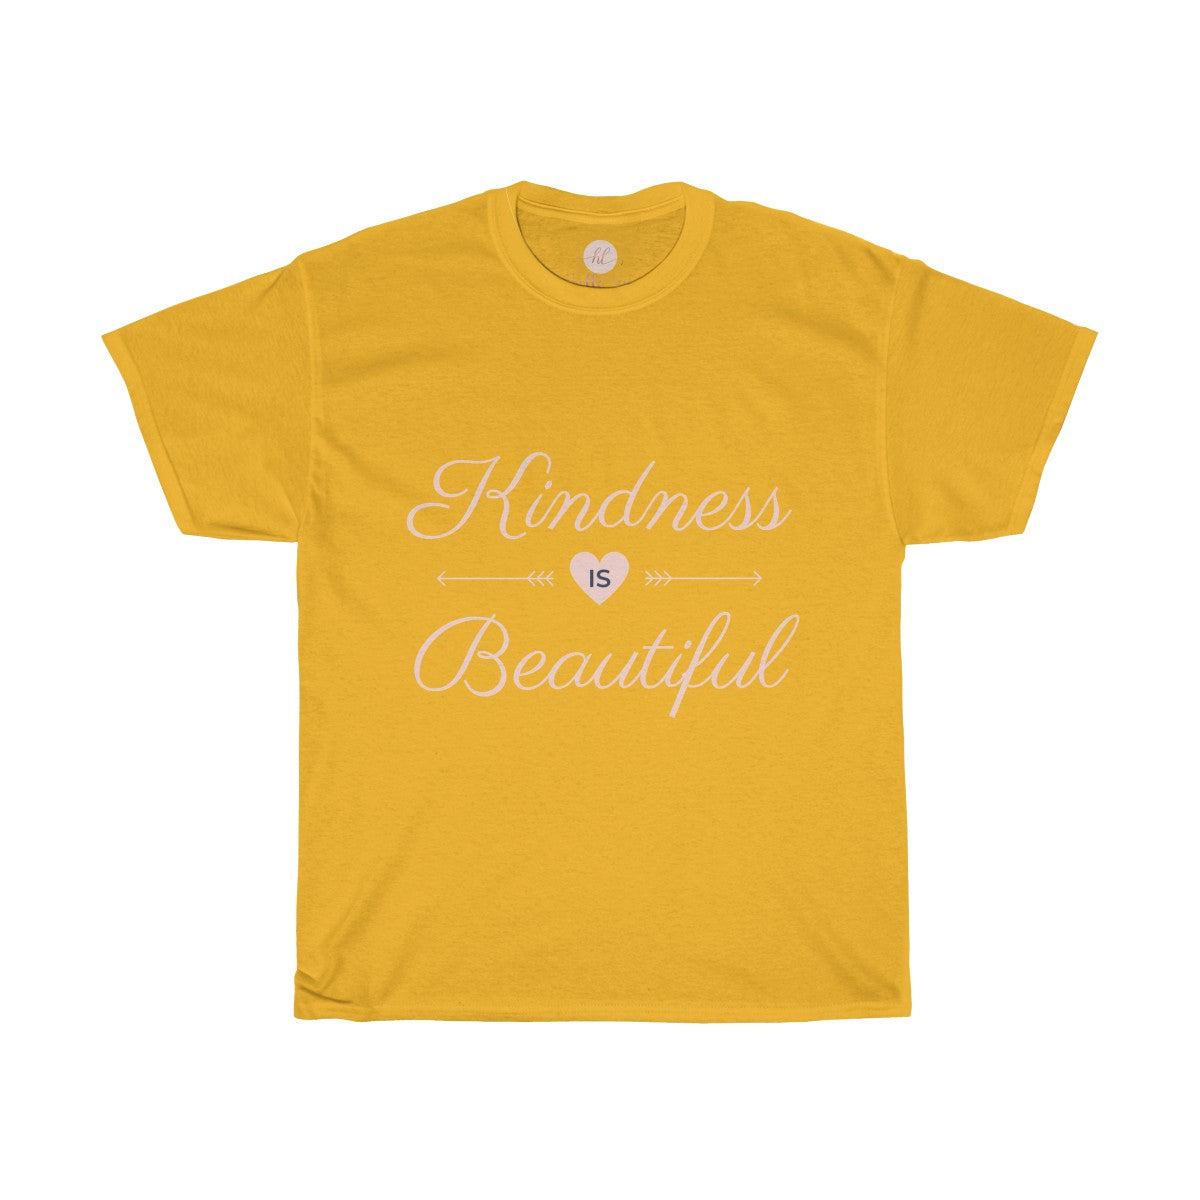 Kindness is Beautiful Tee| Kindness is Beautiful T-shirt